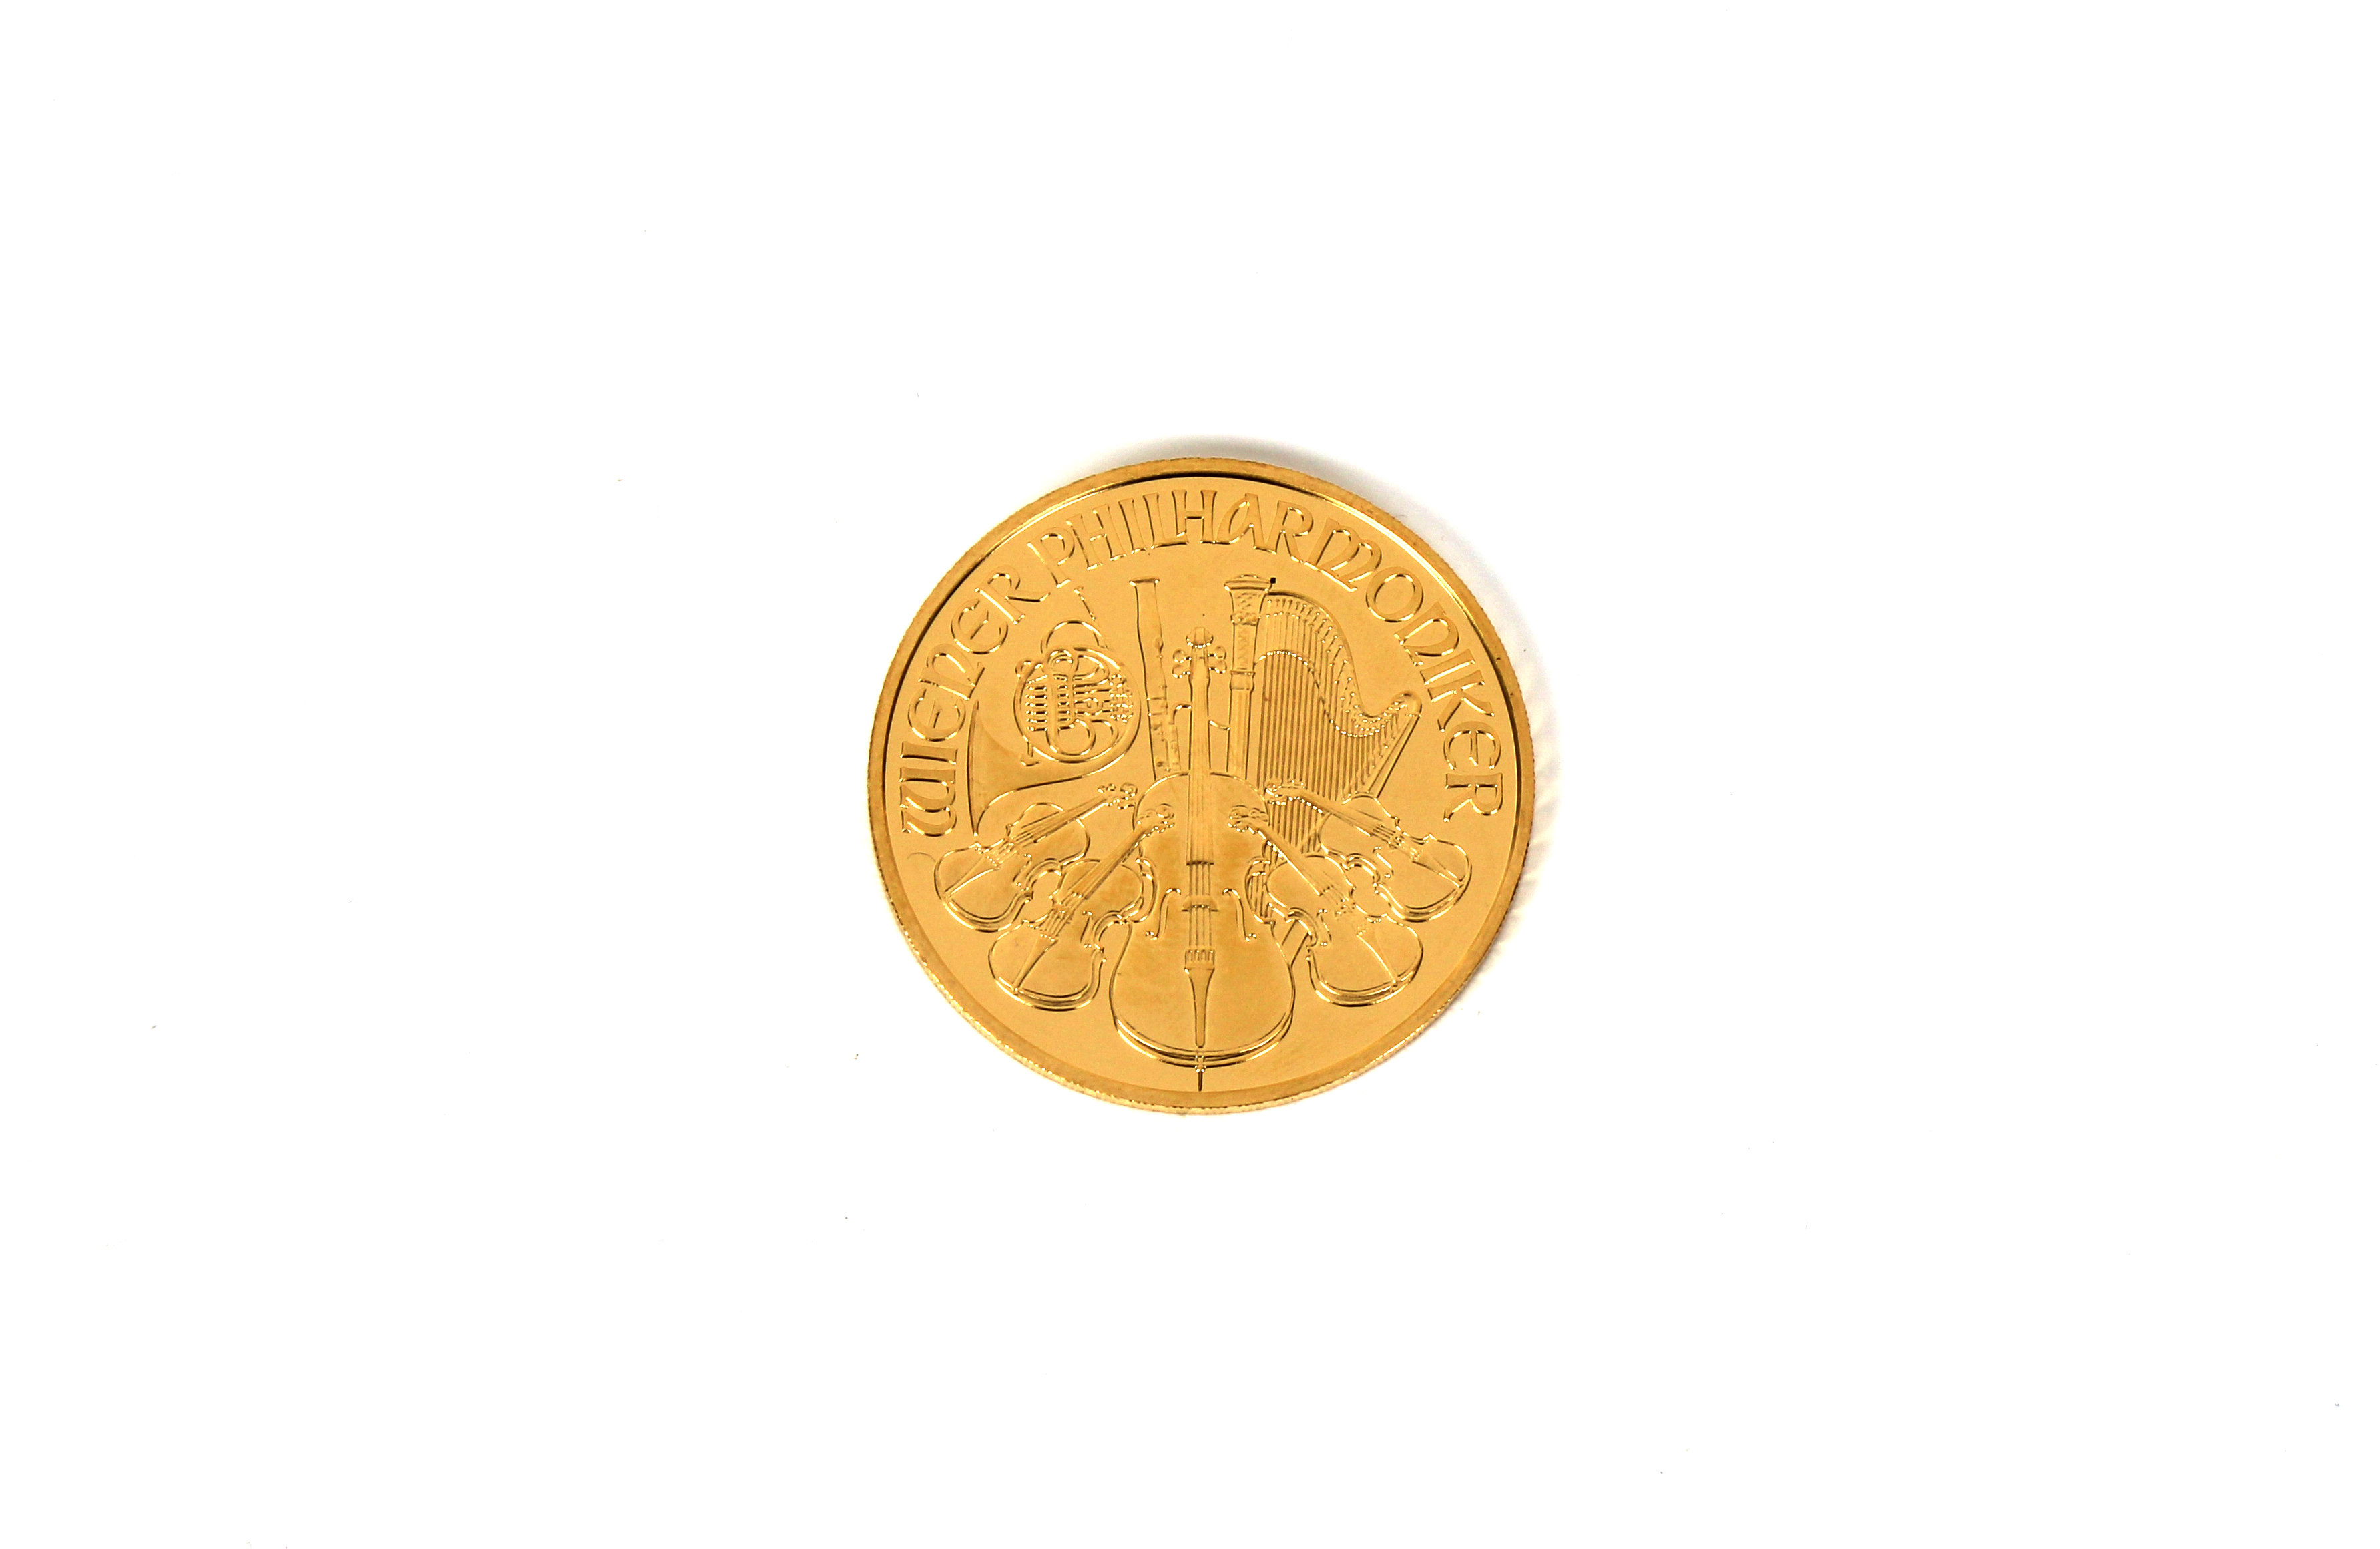 A Münze Österreich Vienna Austria 2003 1oz Gold (.999) 100 Euro coin. - Image 2 of 2